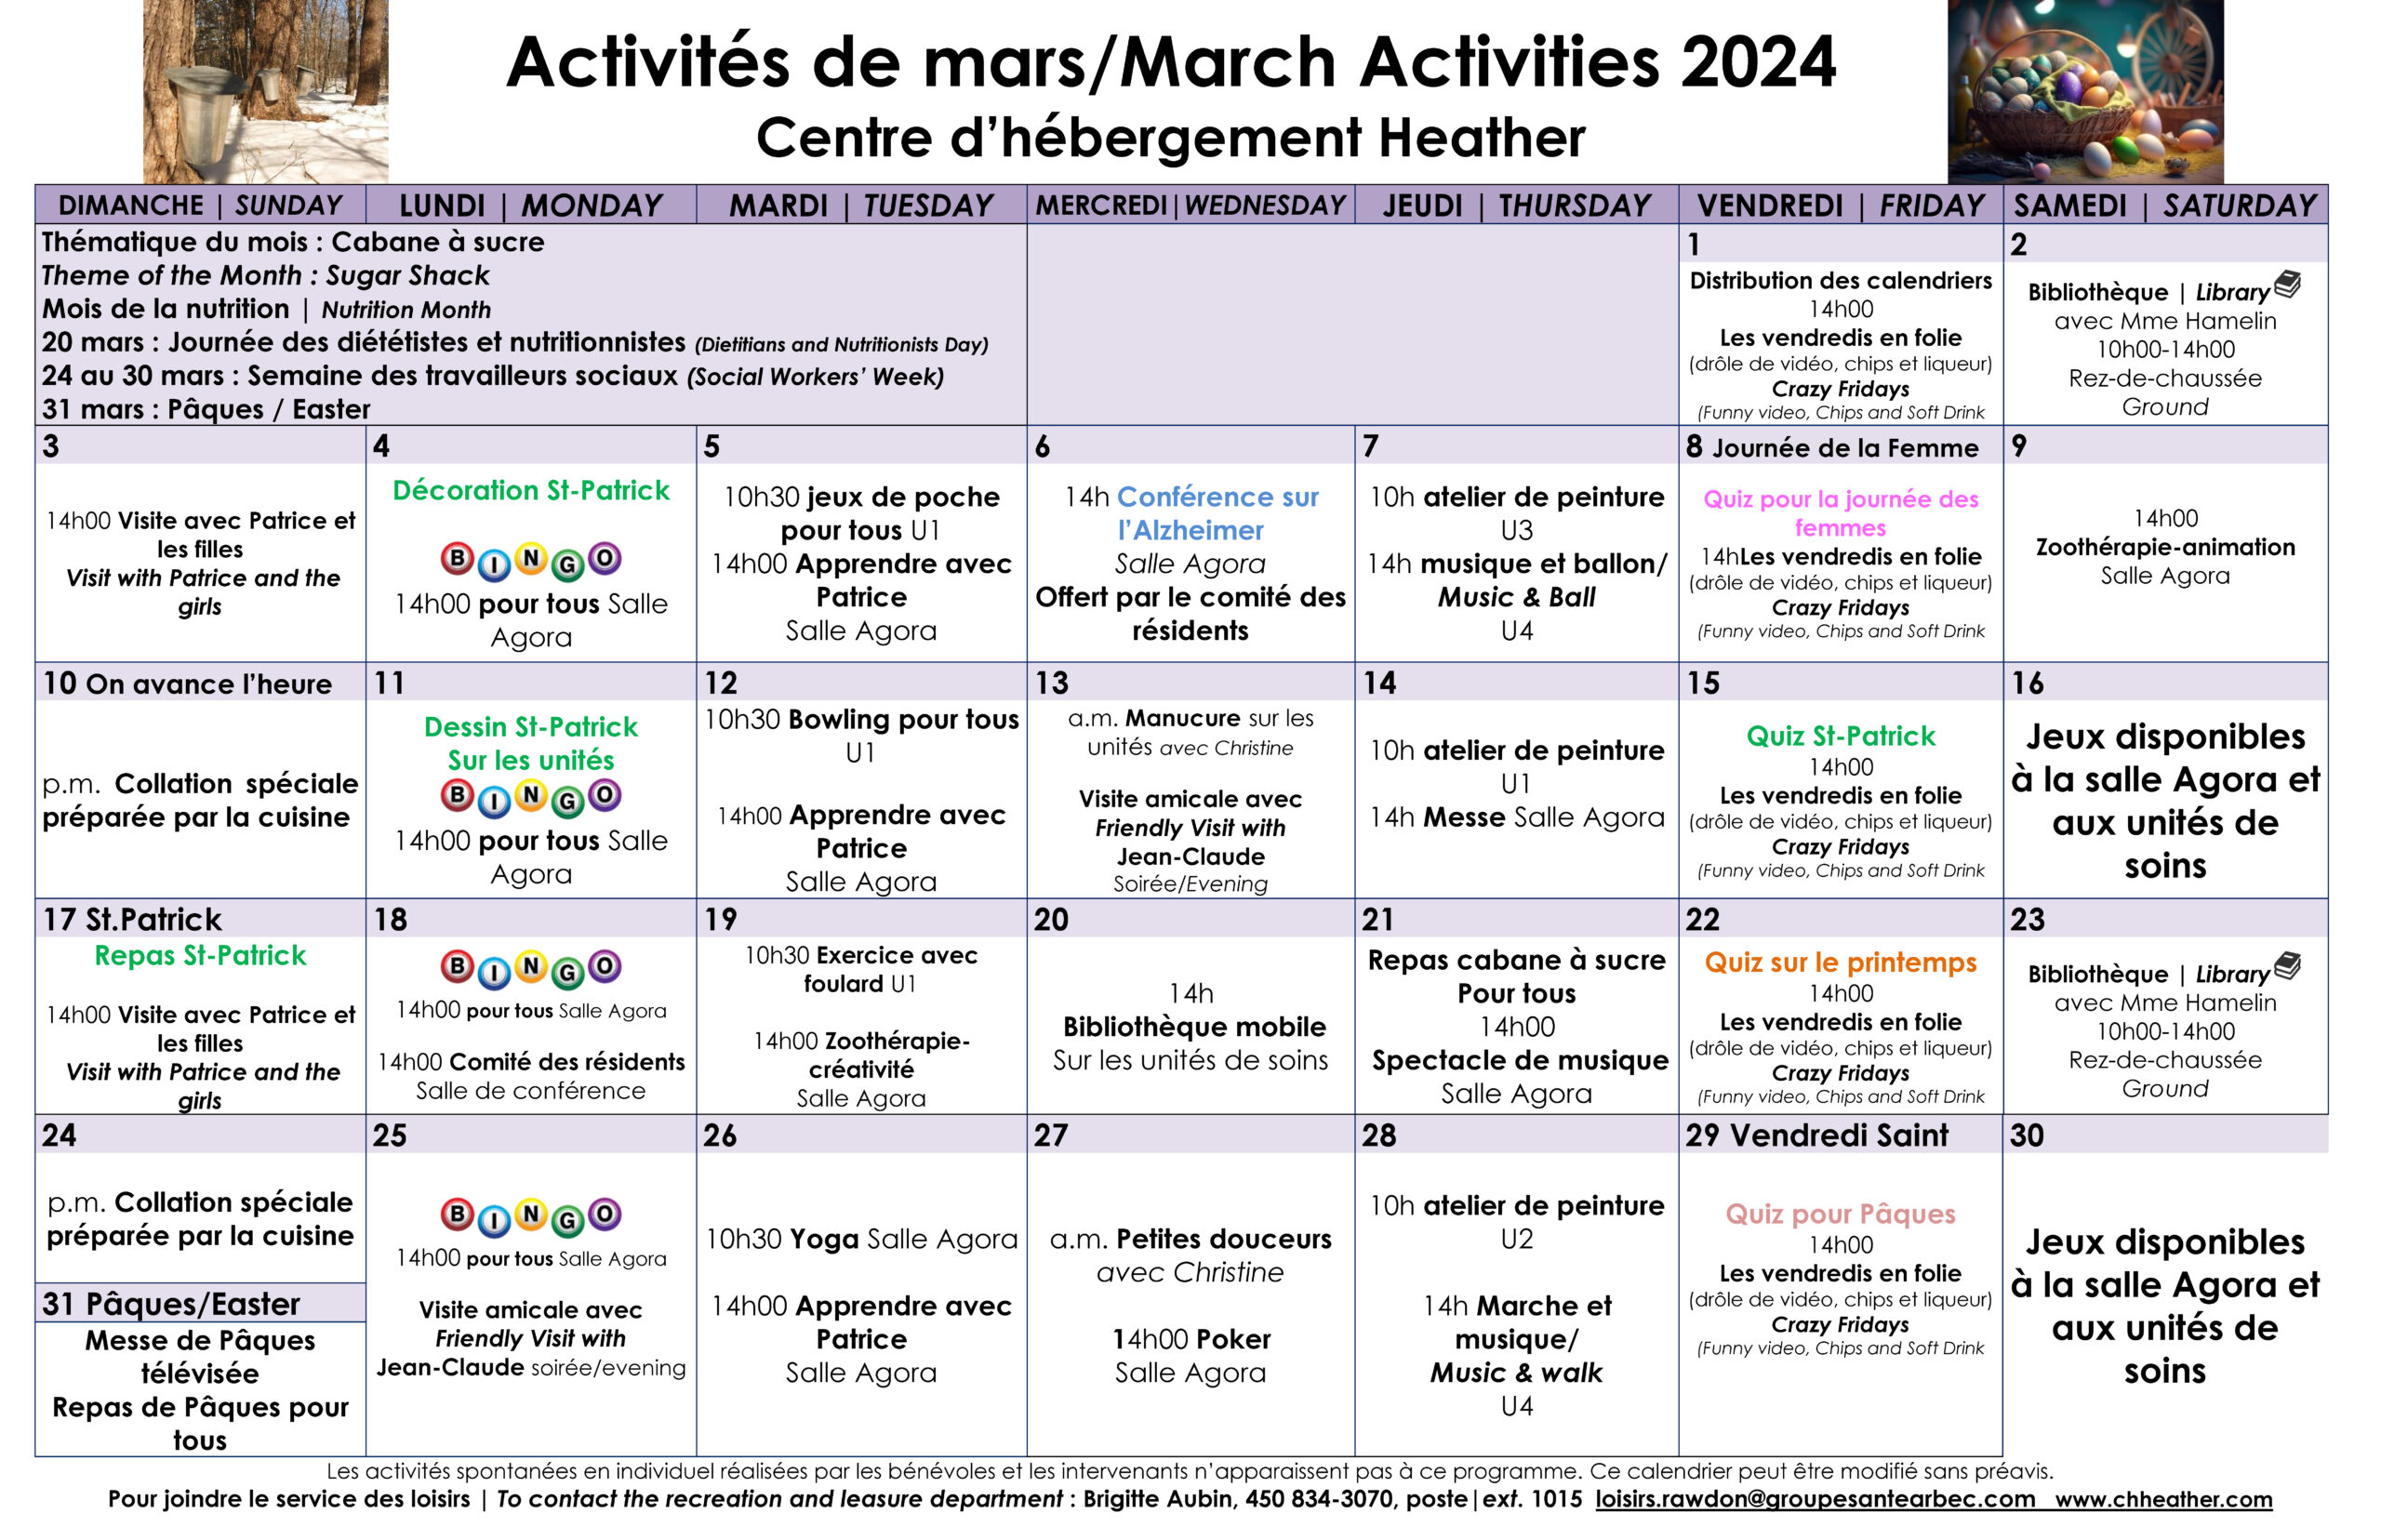 Calendrier des loisirs du mois de mars 2024 pour les résidents du CHSLD Heather